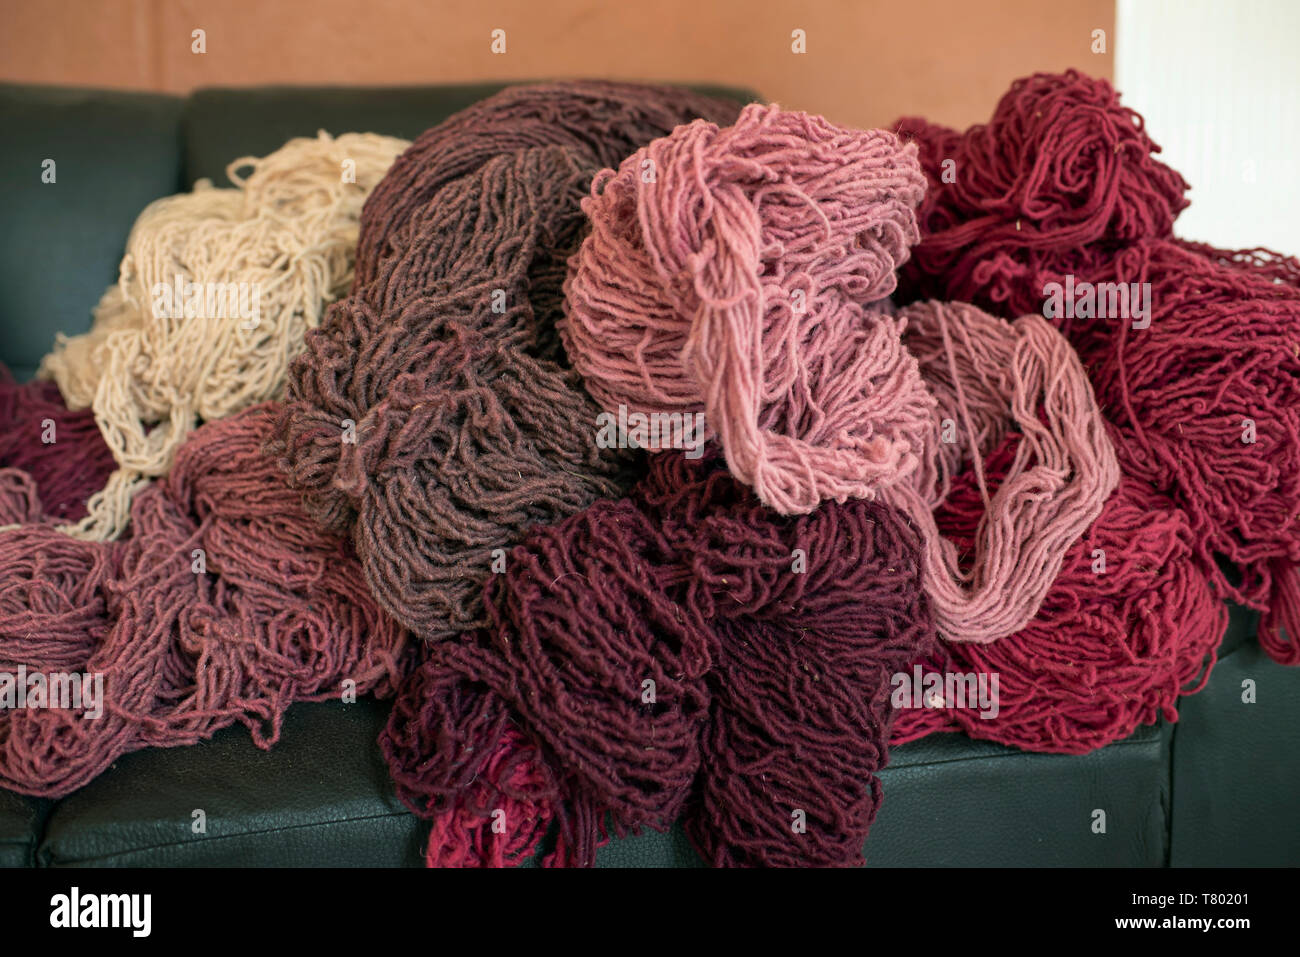 Hilados de lana preparados para ser tejidas. Diferentes tonos de colorante rojo natural obtenido a partir de la cochinilla. Teotitlán del Valle, Oaxaca, México. Apr 2019 Foto de stock